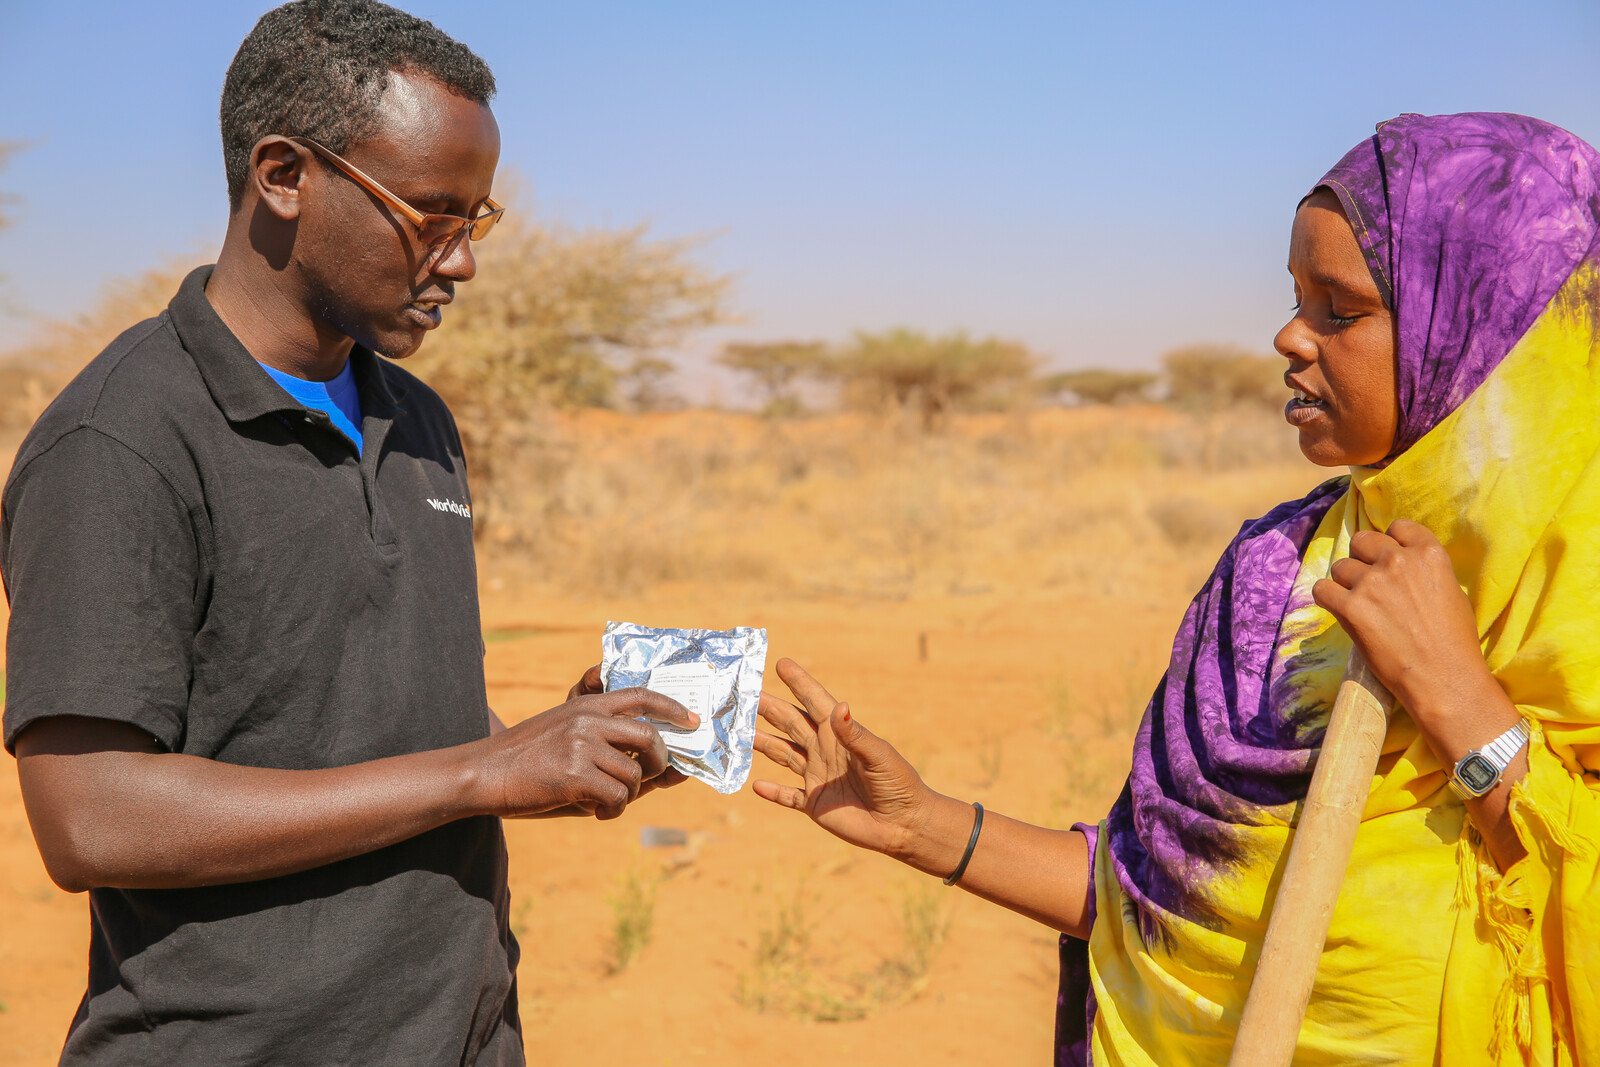 Katastrophenvorsorge: Ein Helfer mit einer Bäuerin in Somalia, wo große Dürre herrscht 